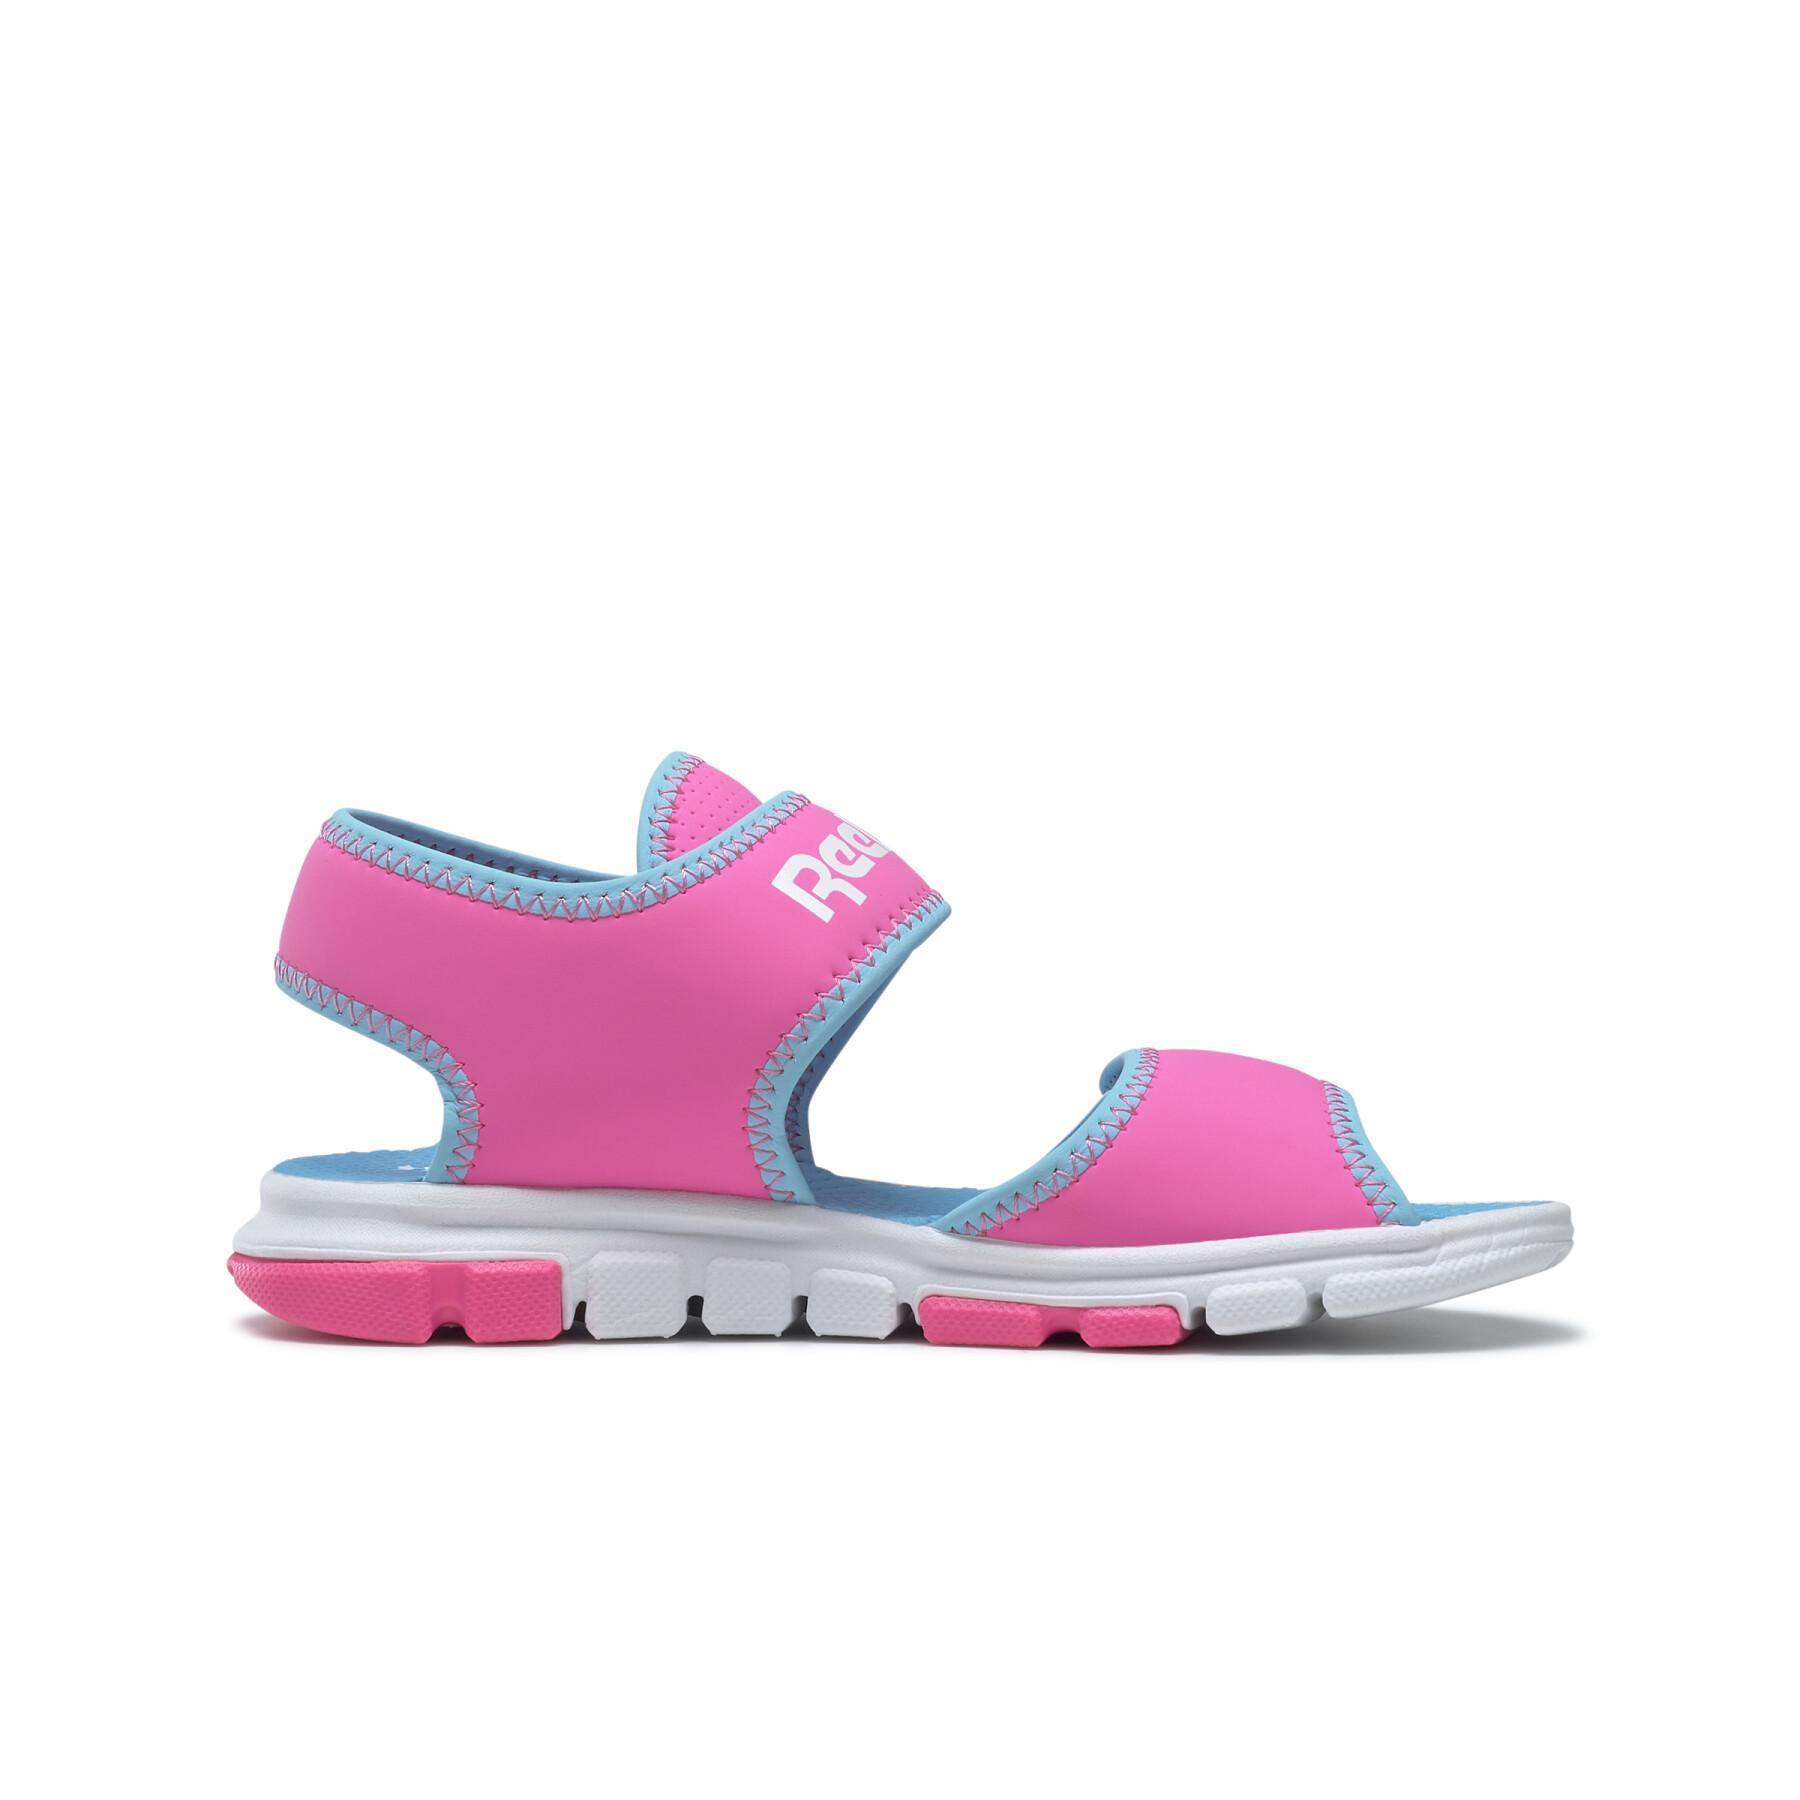 Girls' sandals Reebok Wave Glider III